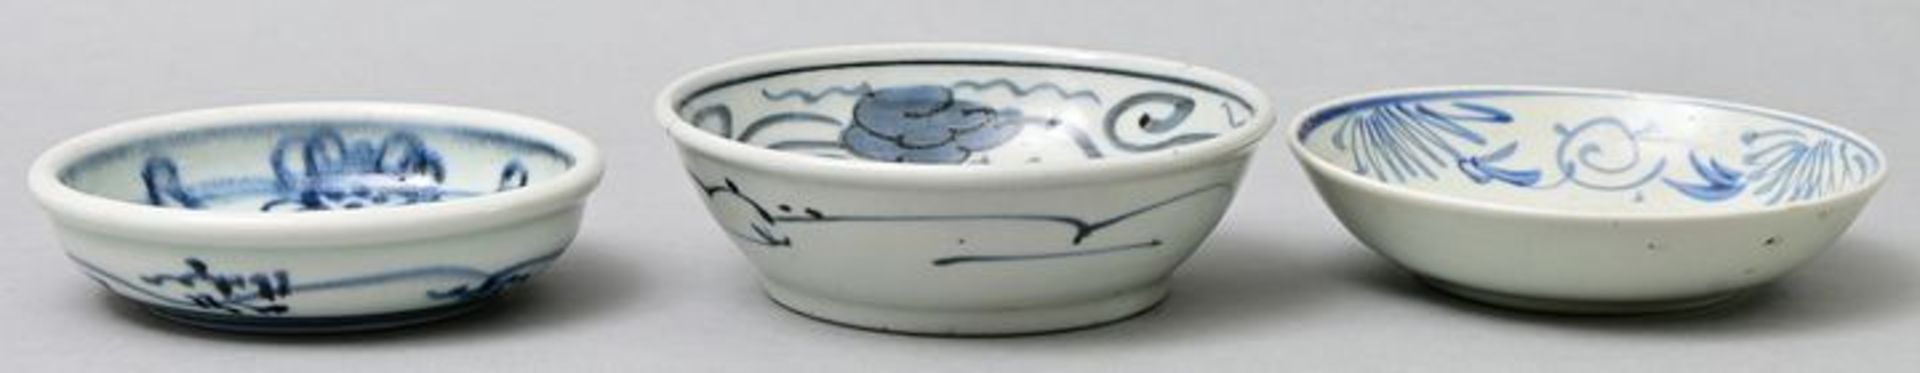 Schälchen Porzellan/ Imari bowls - Image 2 of 3